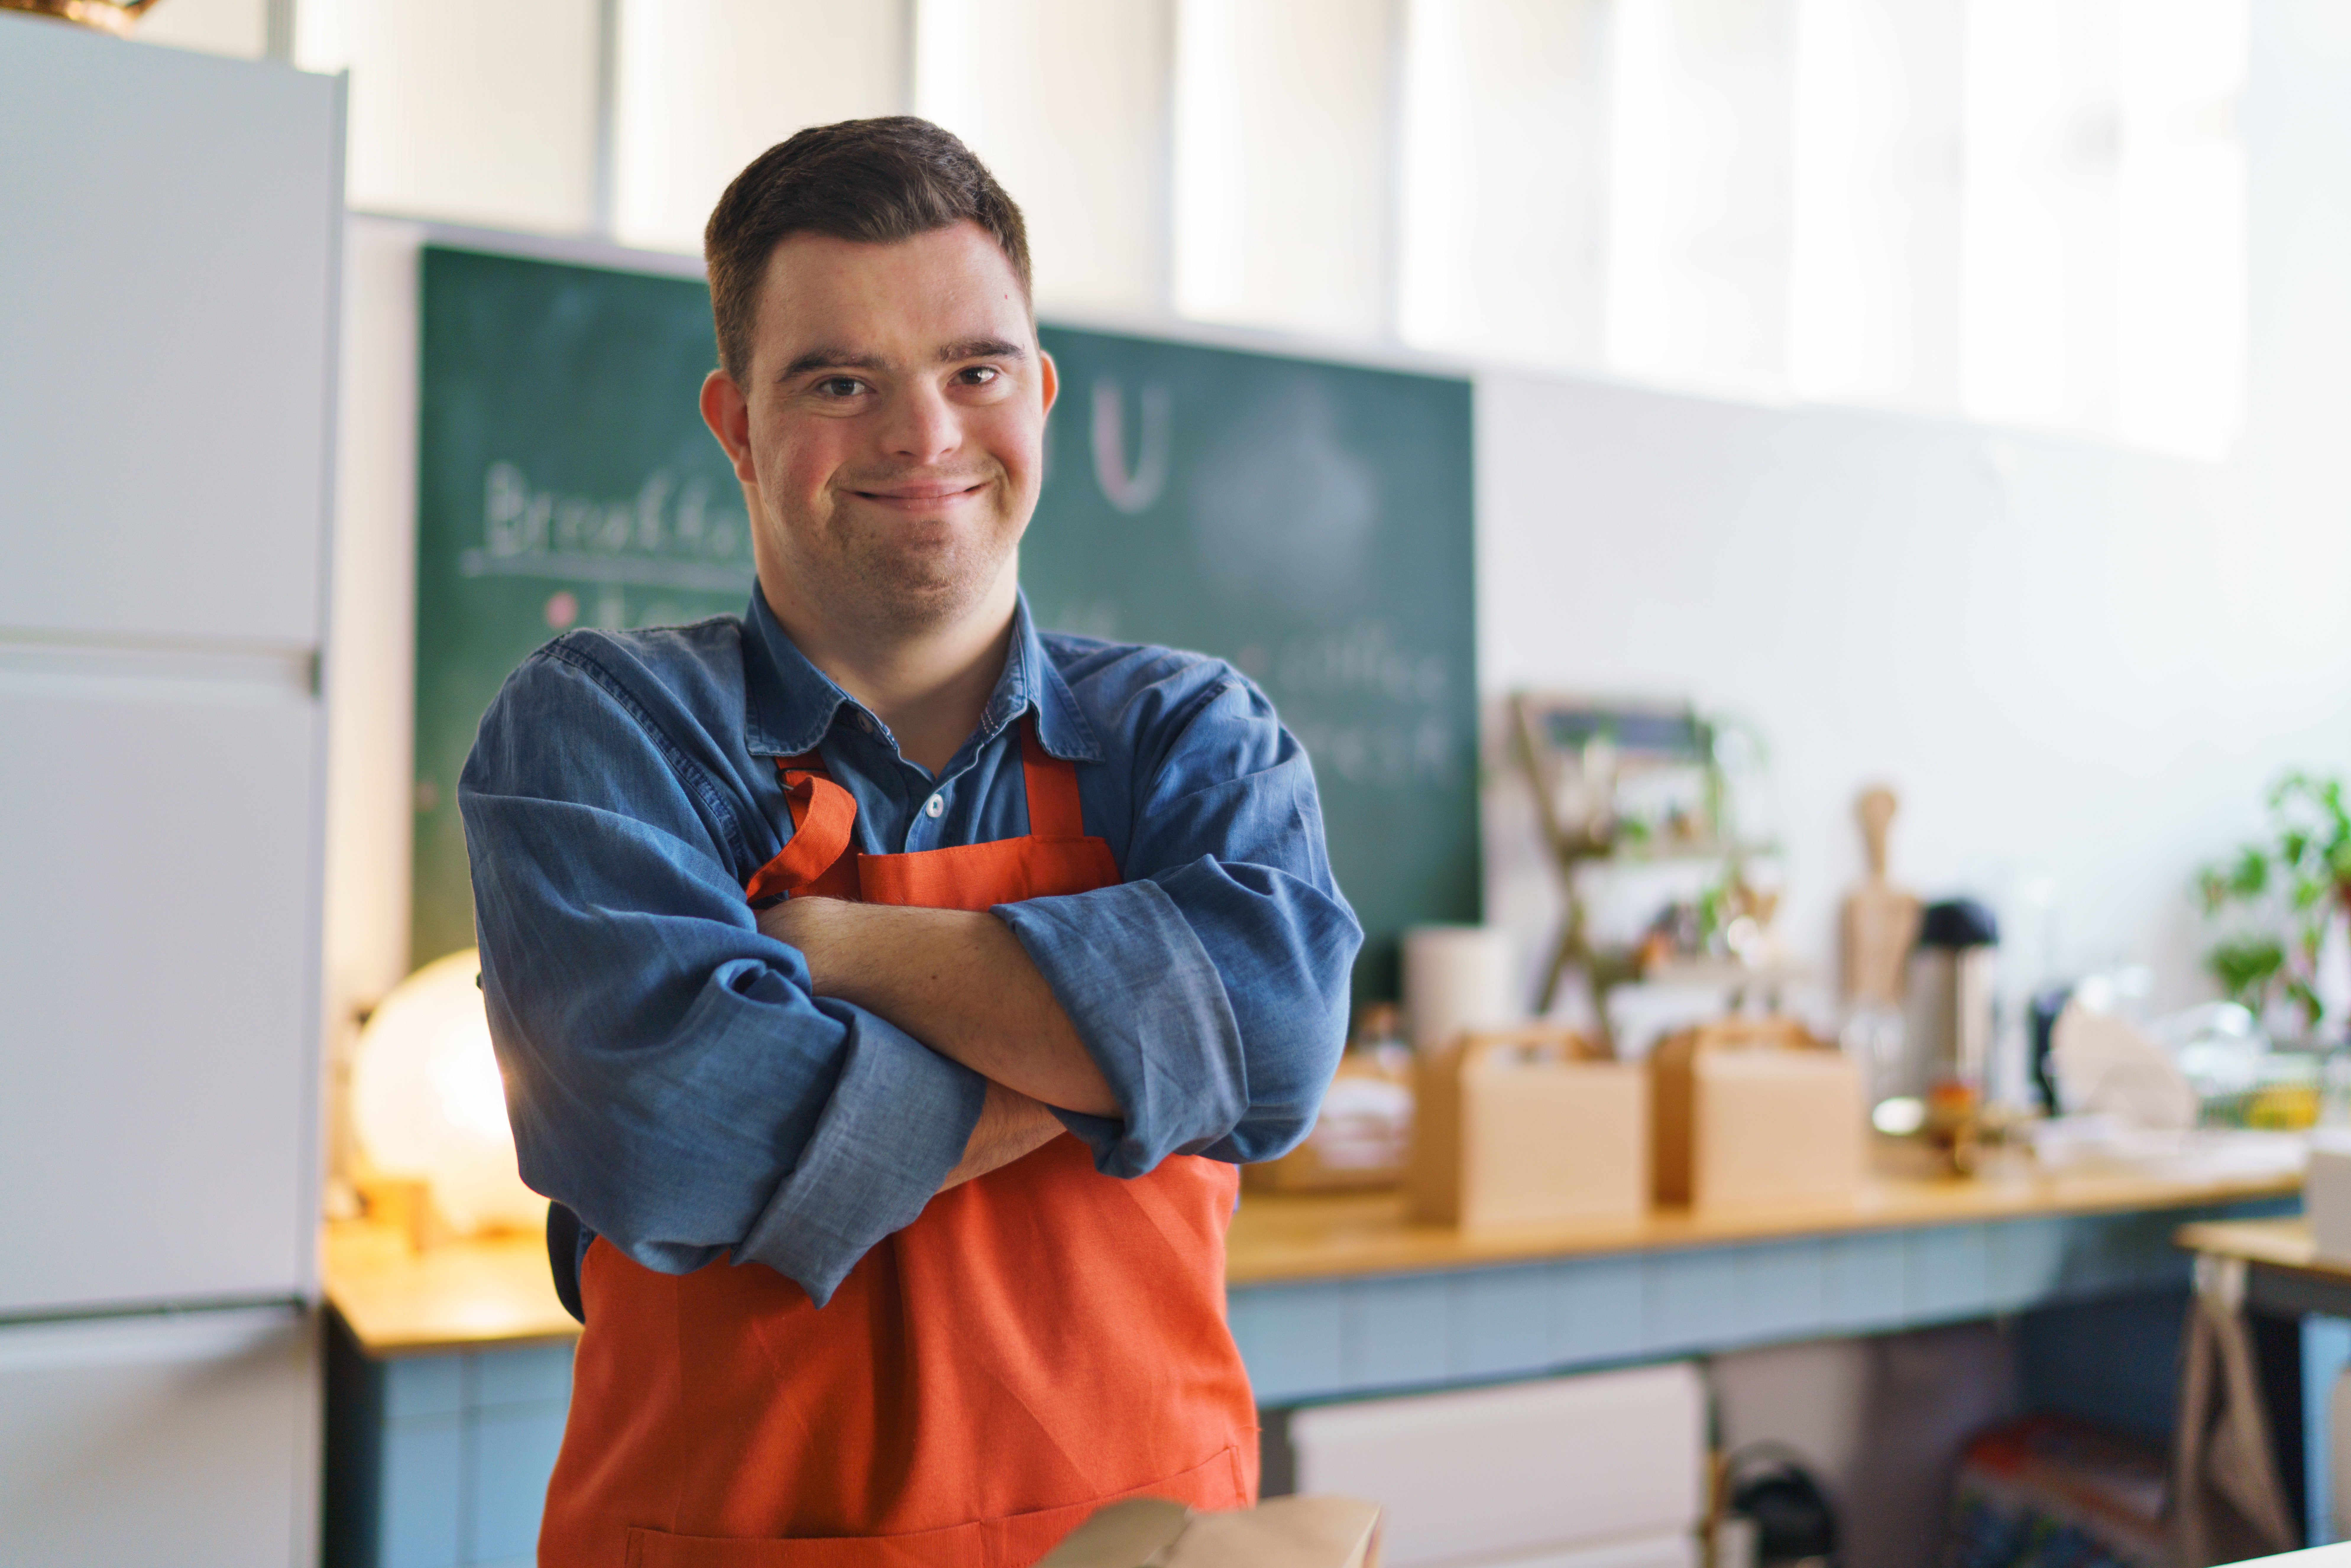 Un homme atteint du syndrome de Down travaillant comme serveur dans un restaurant | Source : Shutterstock